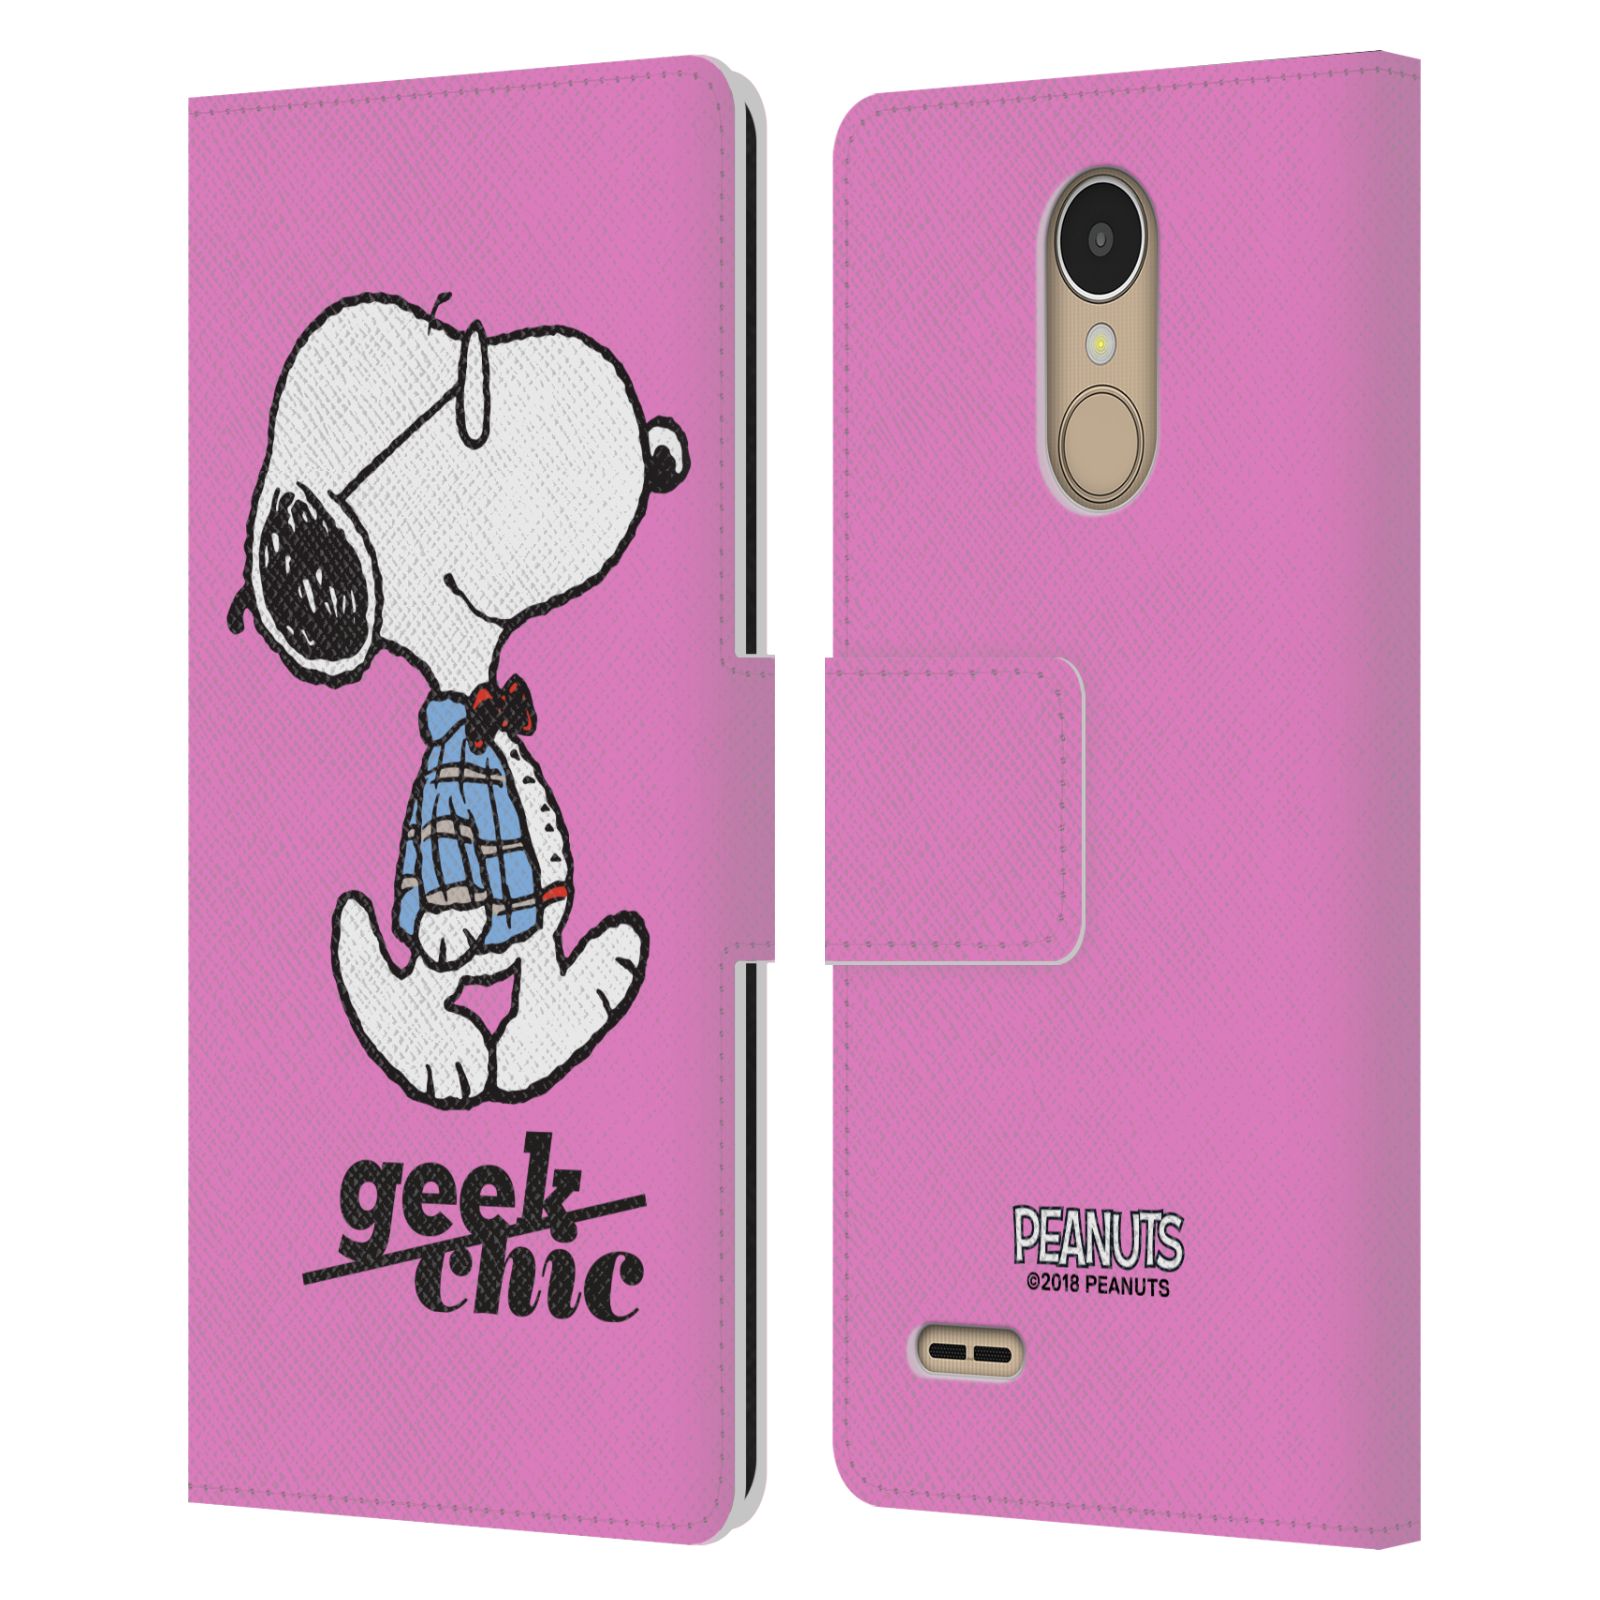 Pouzdro na mobil LG K10 (2017) - Head Case - Peanuts - růžový pejsek snoopy nerd